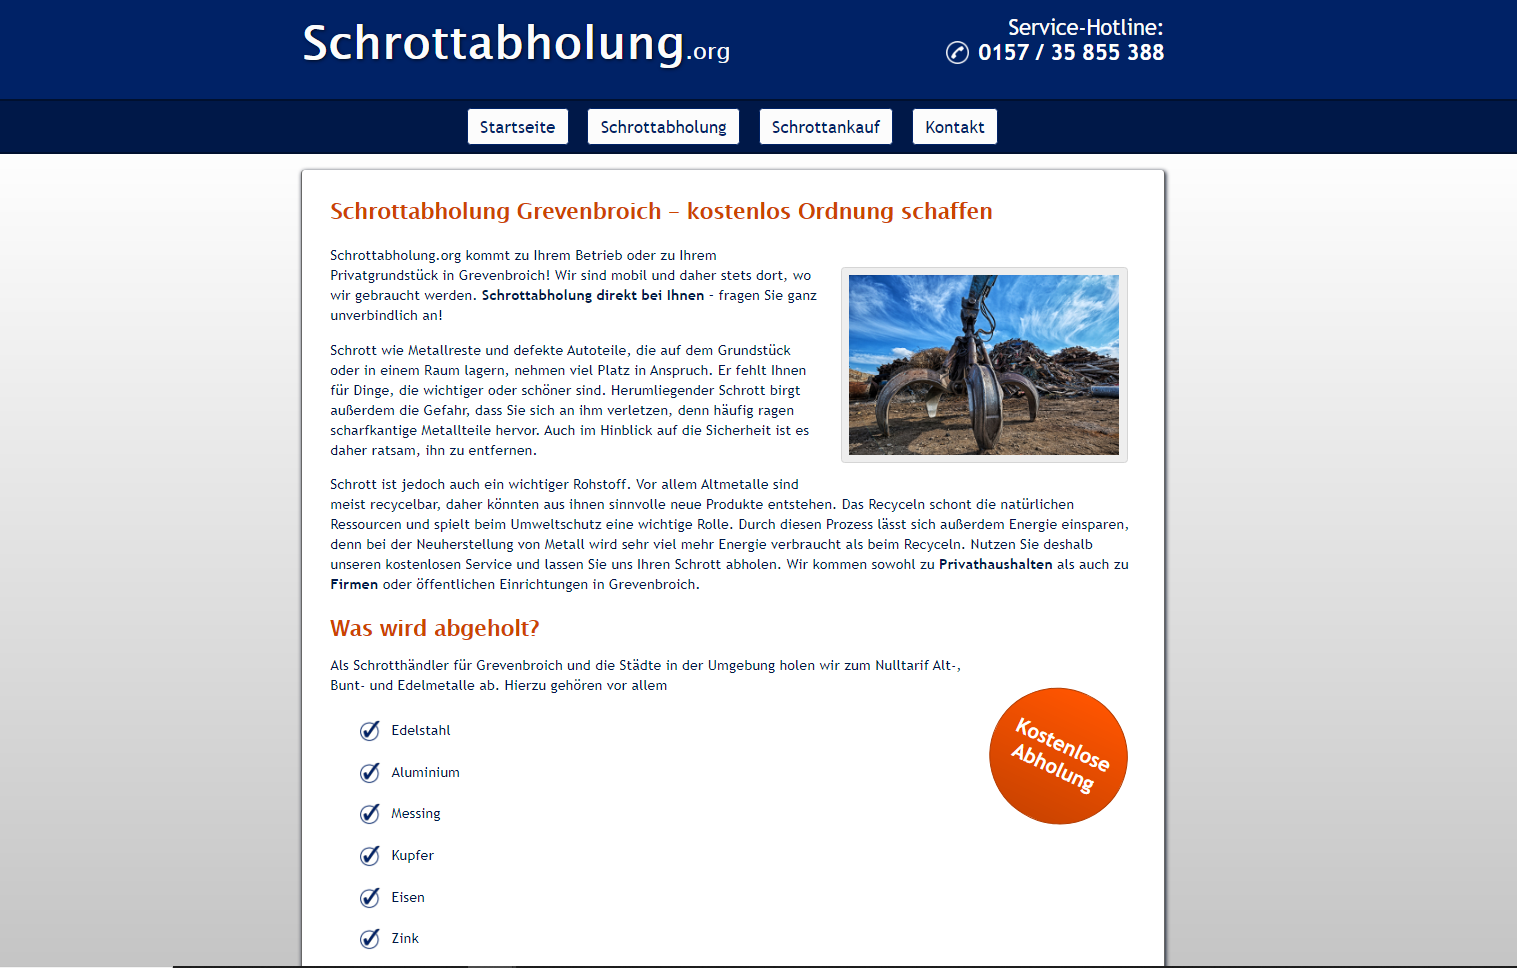 Schrottabholung in Grevenbroich – Metall aller Art abholen lassen